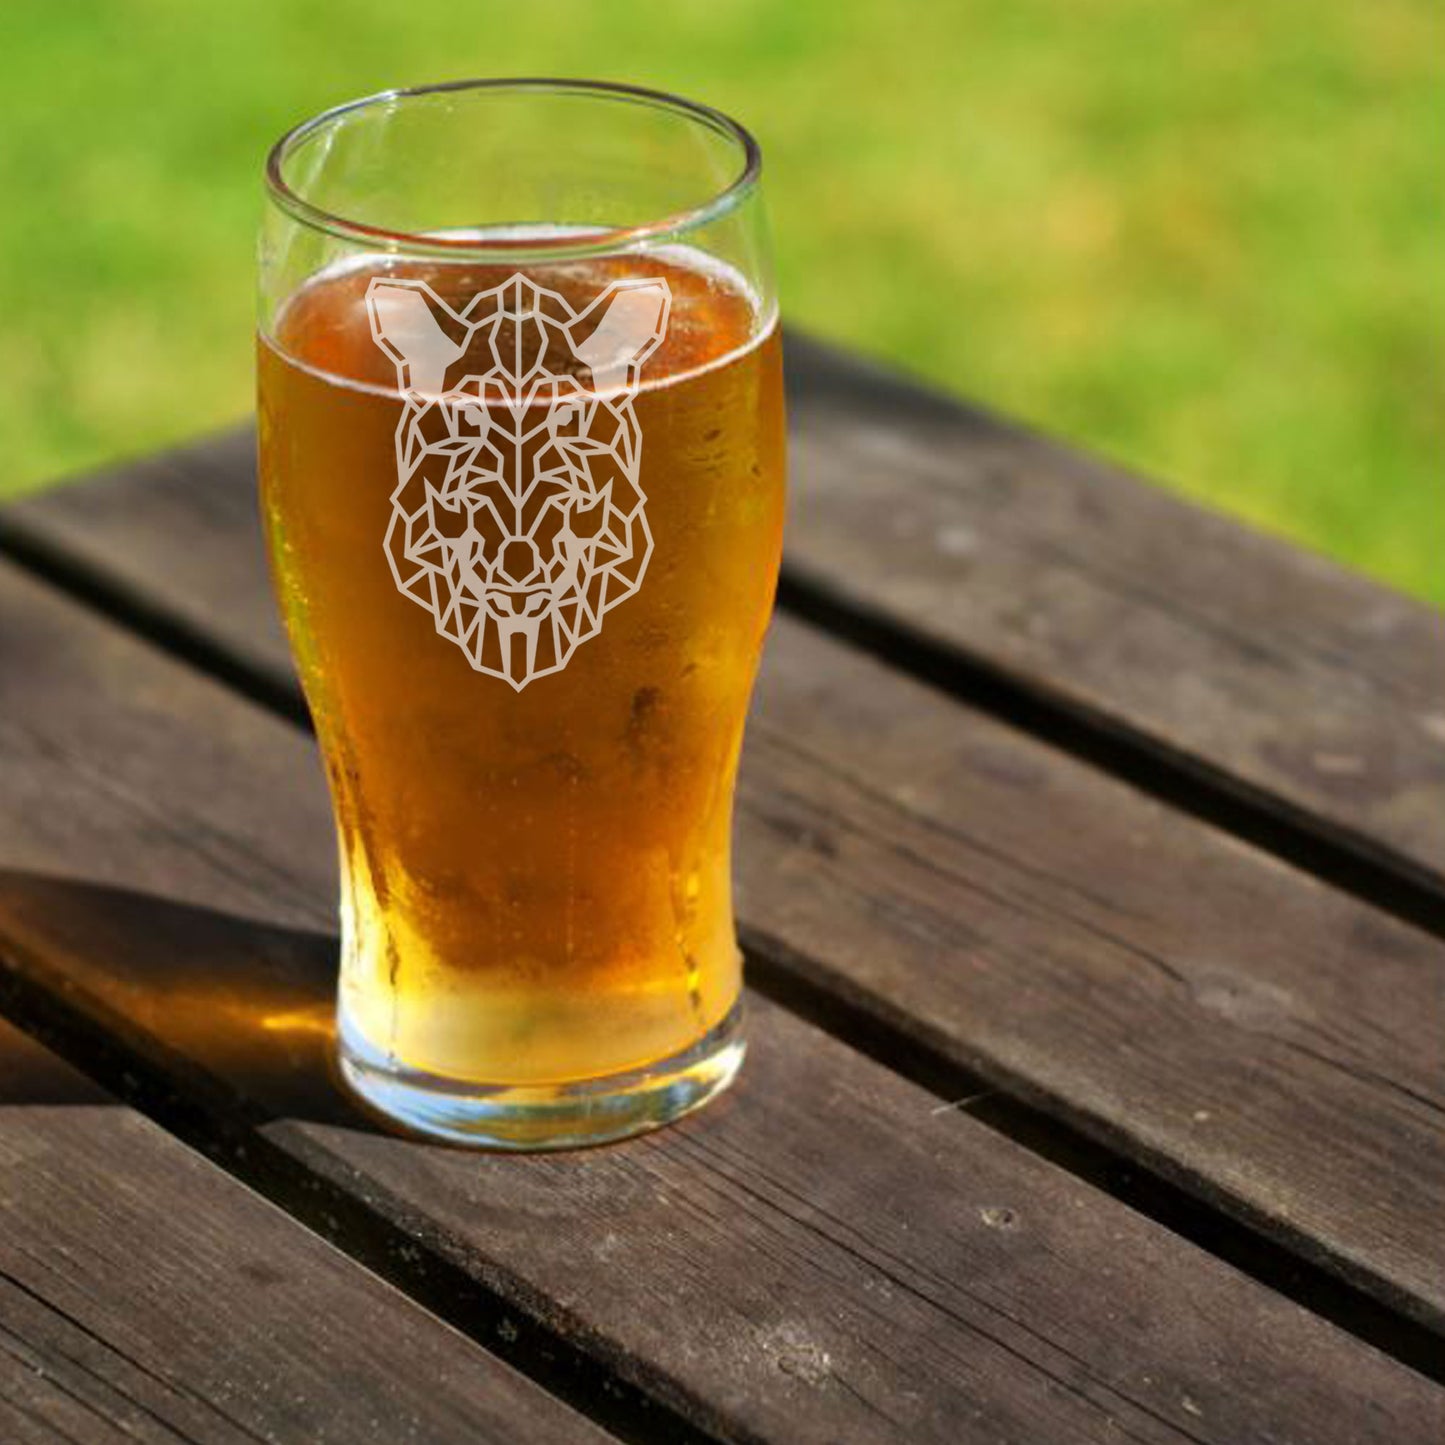 Warthog Engraved Beer Pint Glass  - Always Looking Good -   